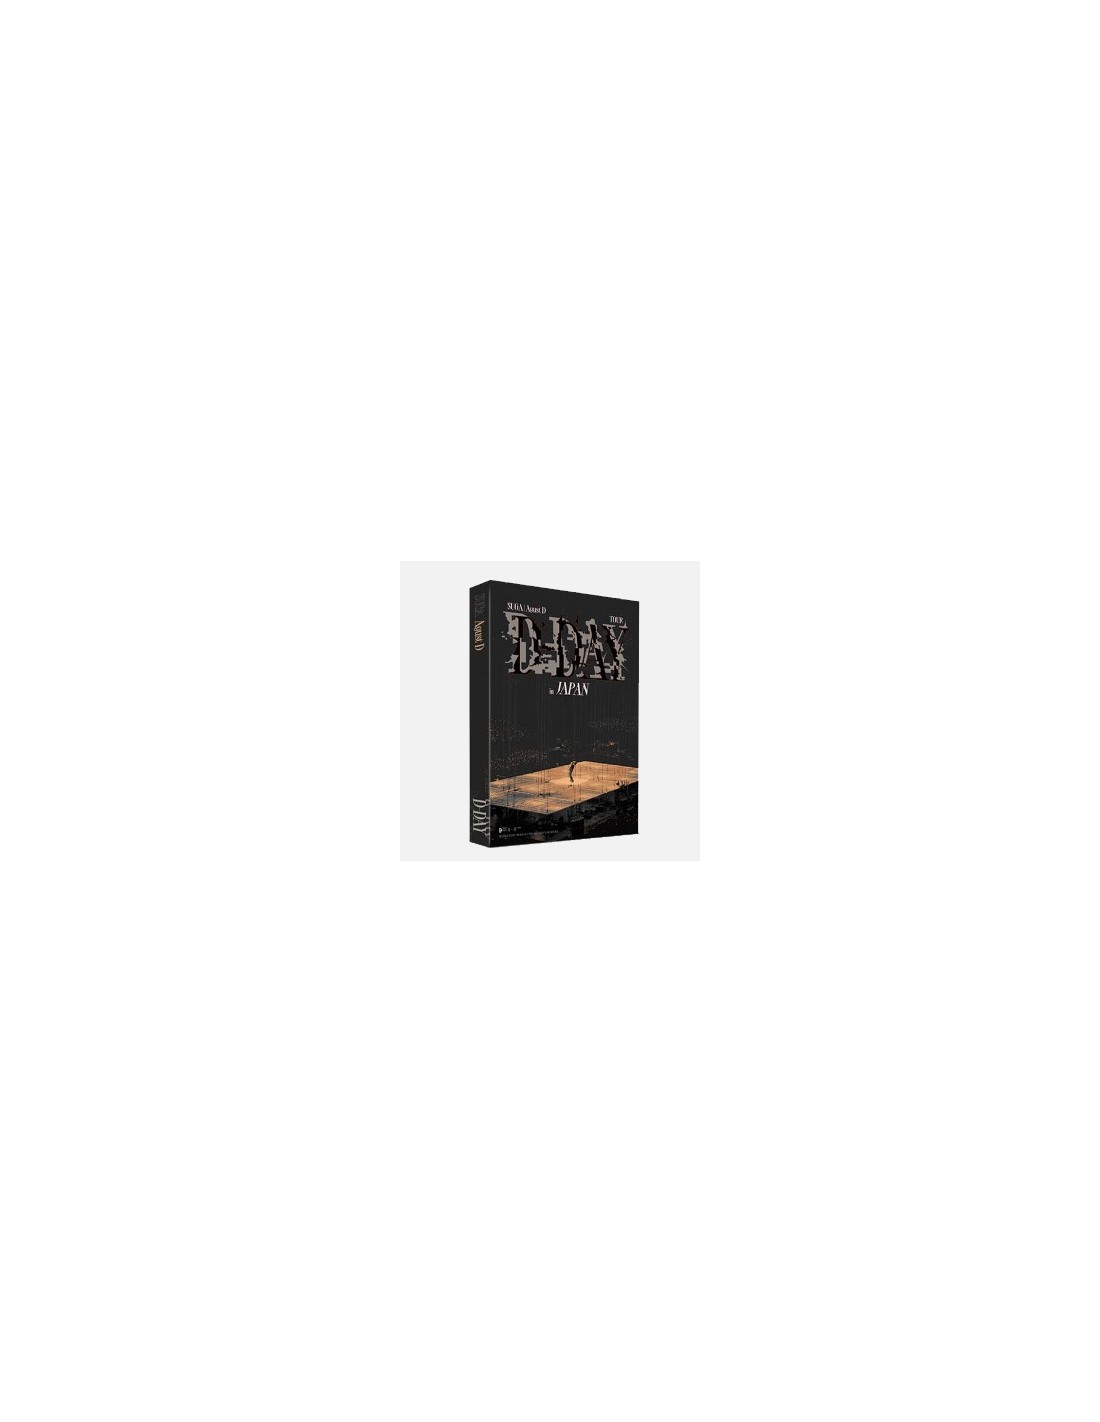 SUGA (Agust D) Solo Album - D-DAY (Random Ver.) CD